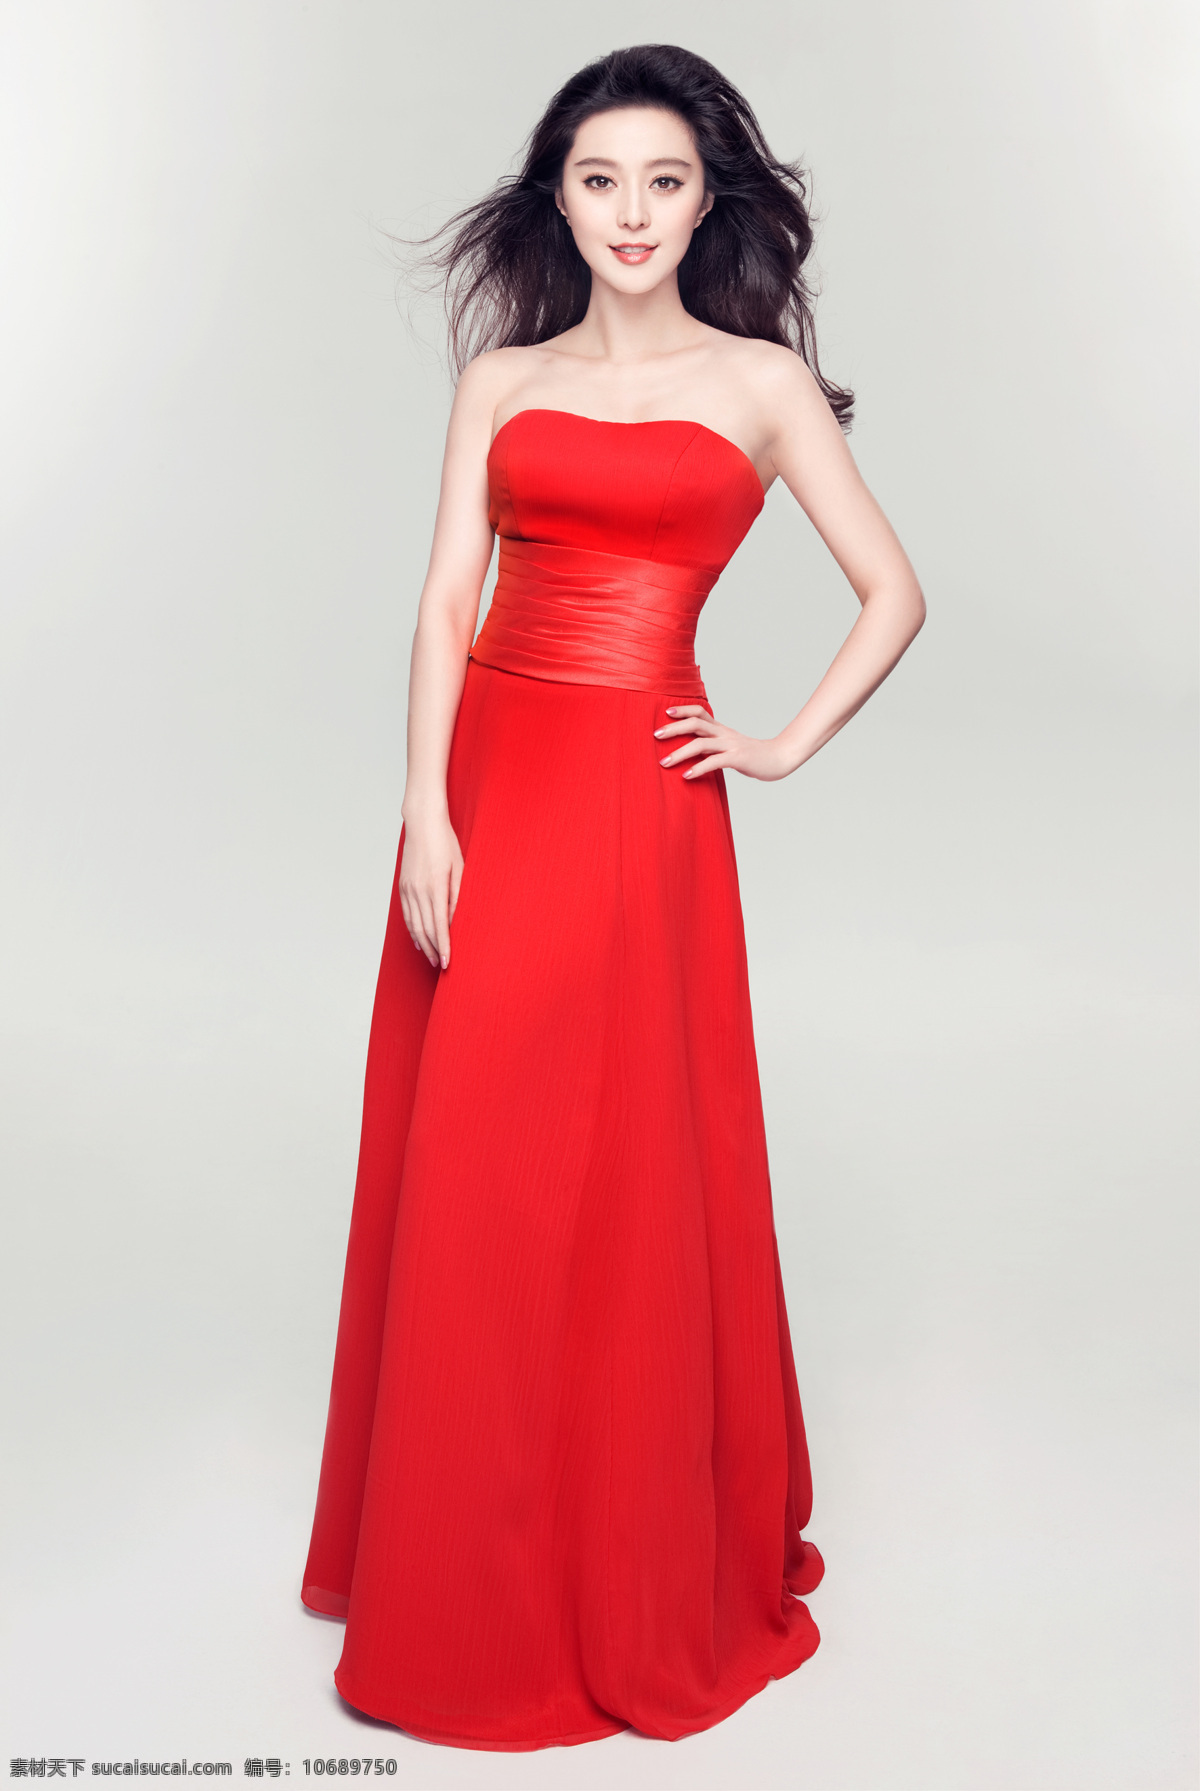 红 裙 美女 范冰冰 优雅 妖艳 动感 红裙 低胸装 气质 喜气 明星偶像 人物图库 明星图片 人物图片